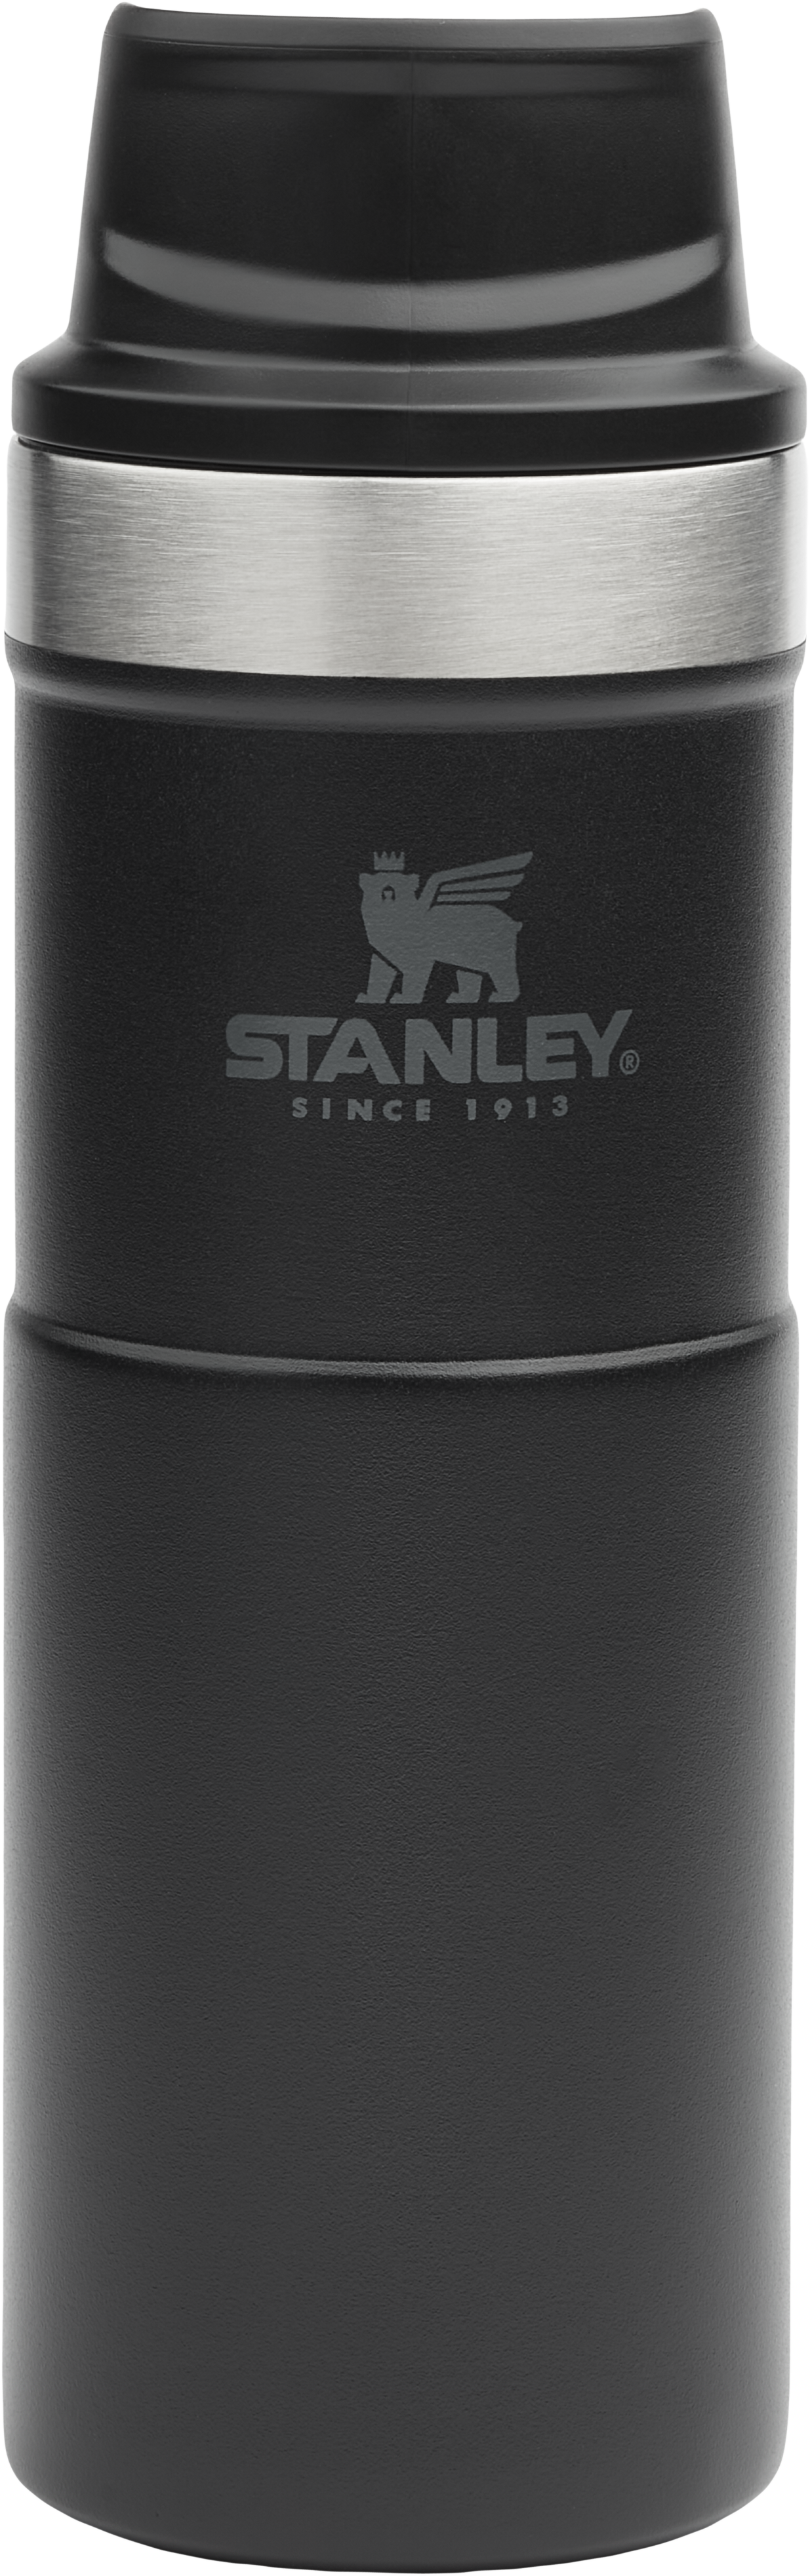 Stanley Trigger Action Travel Mug 16 oz., Best Sellers